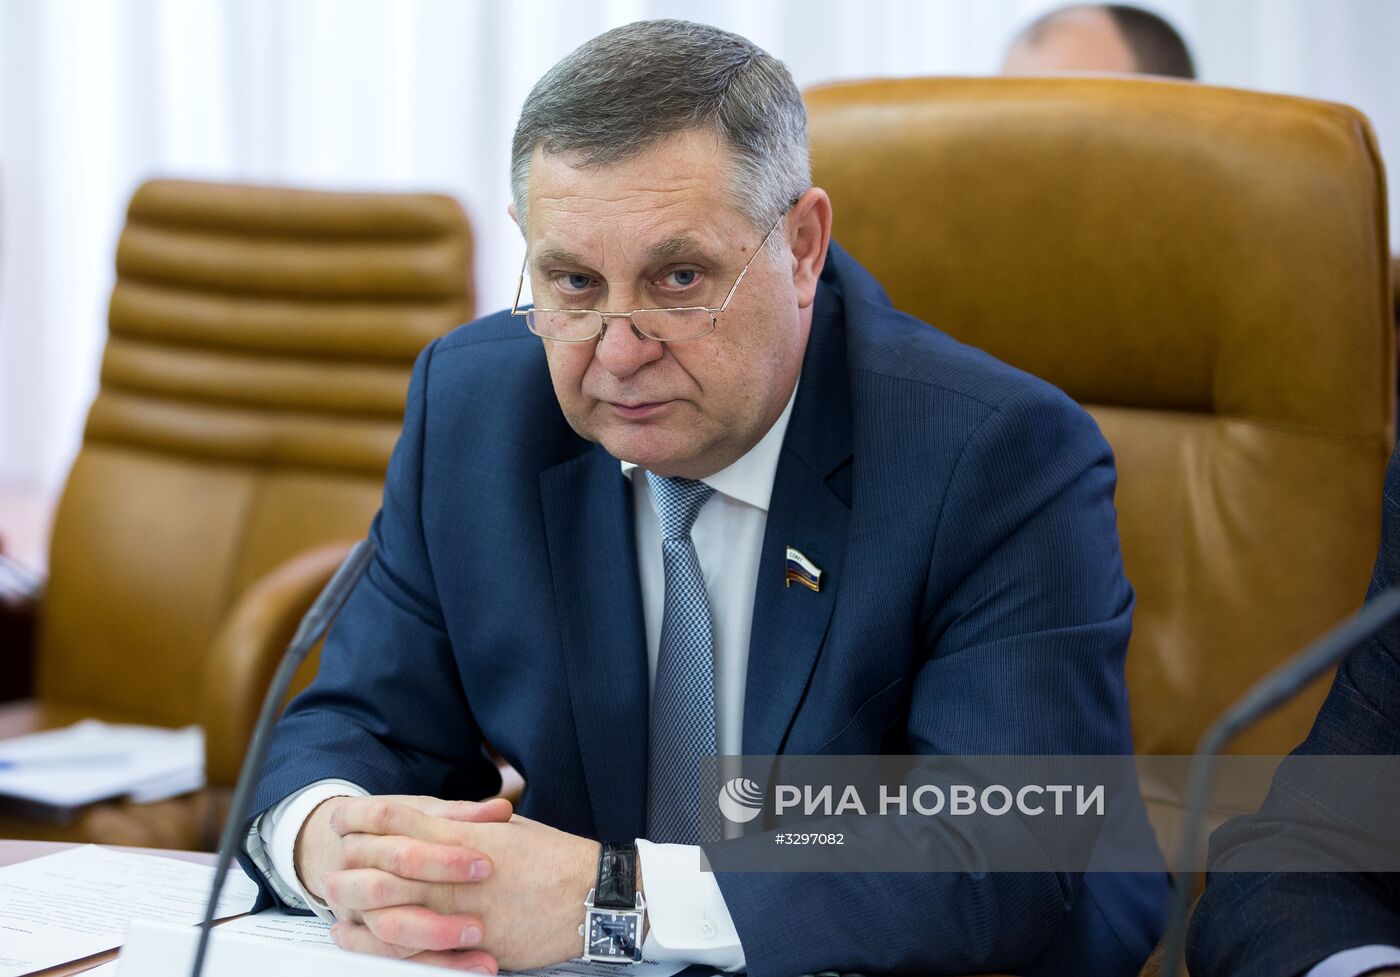 Первым зампредом комитета Совета Федерации по обороне и безопасности назначен А. Ракитин